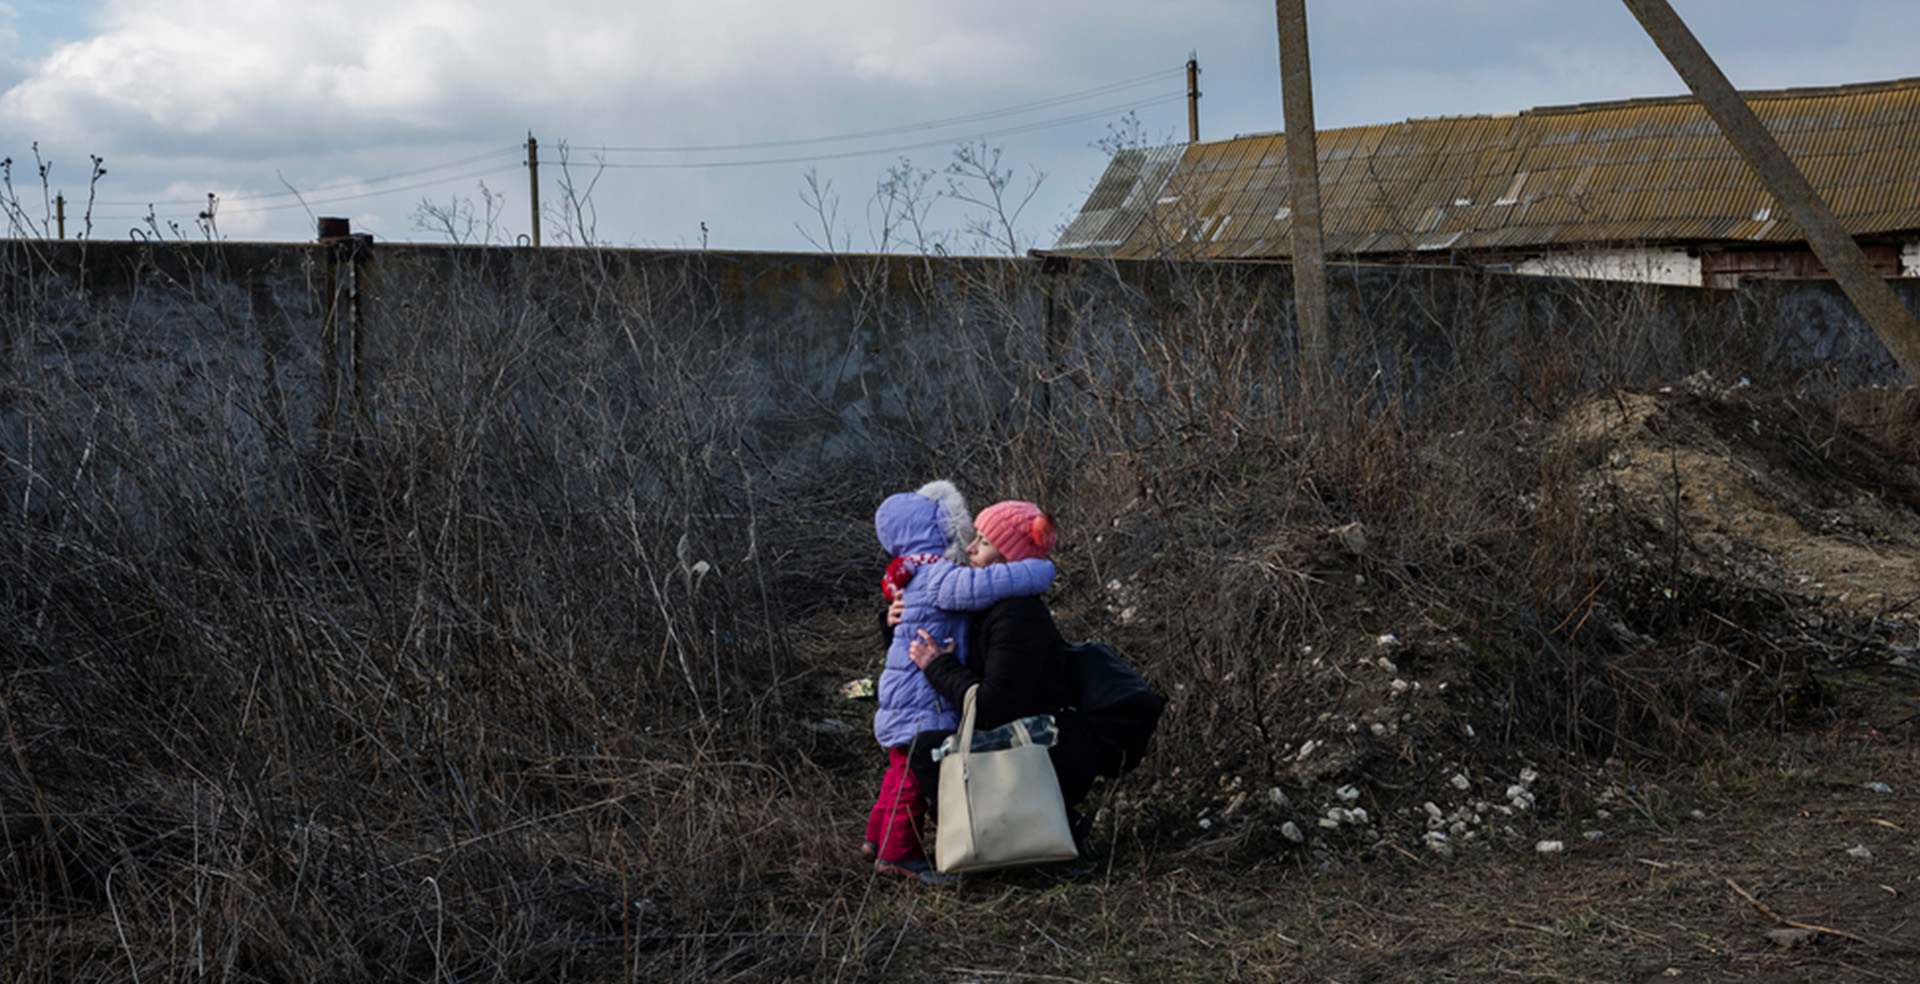 モルドバのパランカで、バスの出発を待つ間に母親が娘を抱きしめる。2月に戦争状態となったウクライナでは、激しい戦闘により多くの人が家を追われ、国内外での避難を余儀なくされている＝2022年3月　Ⓒ Maxime Fossat